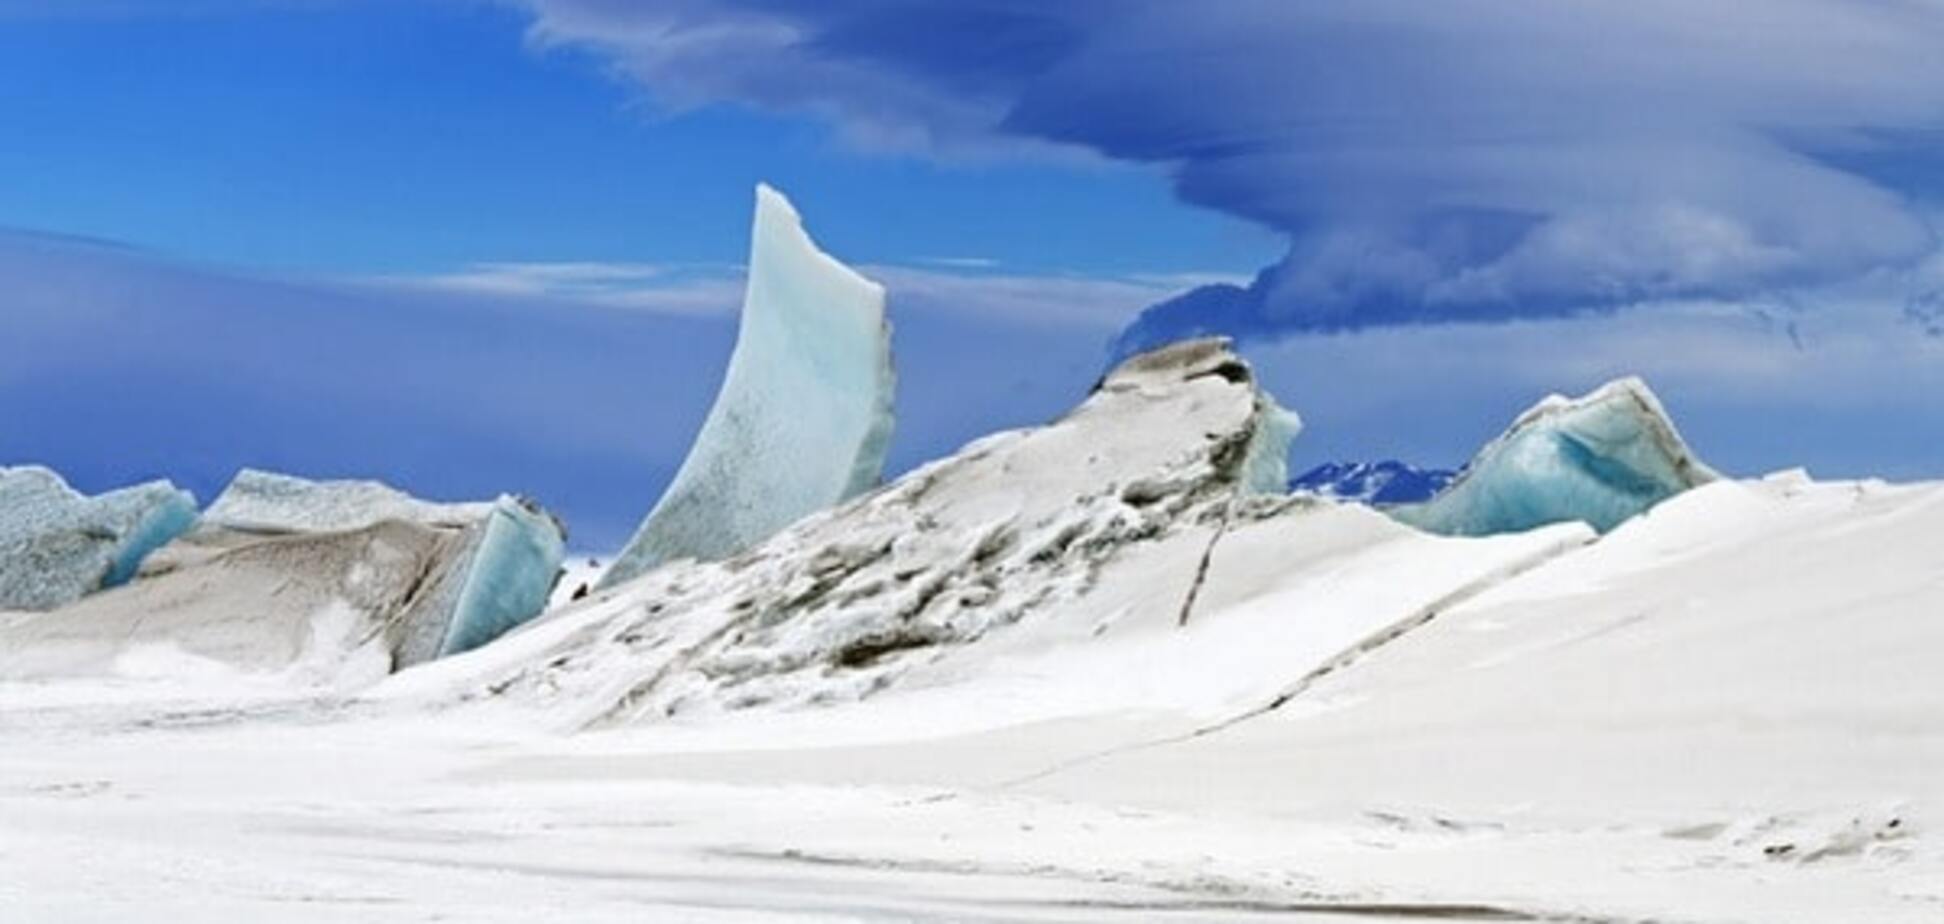 Ученые в панике: воздух в Арктике прогрелся до рекордной температуры